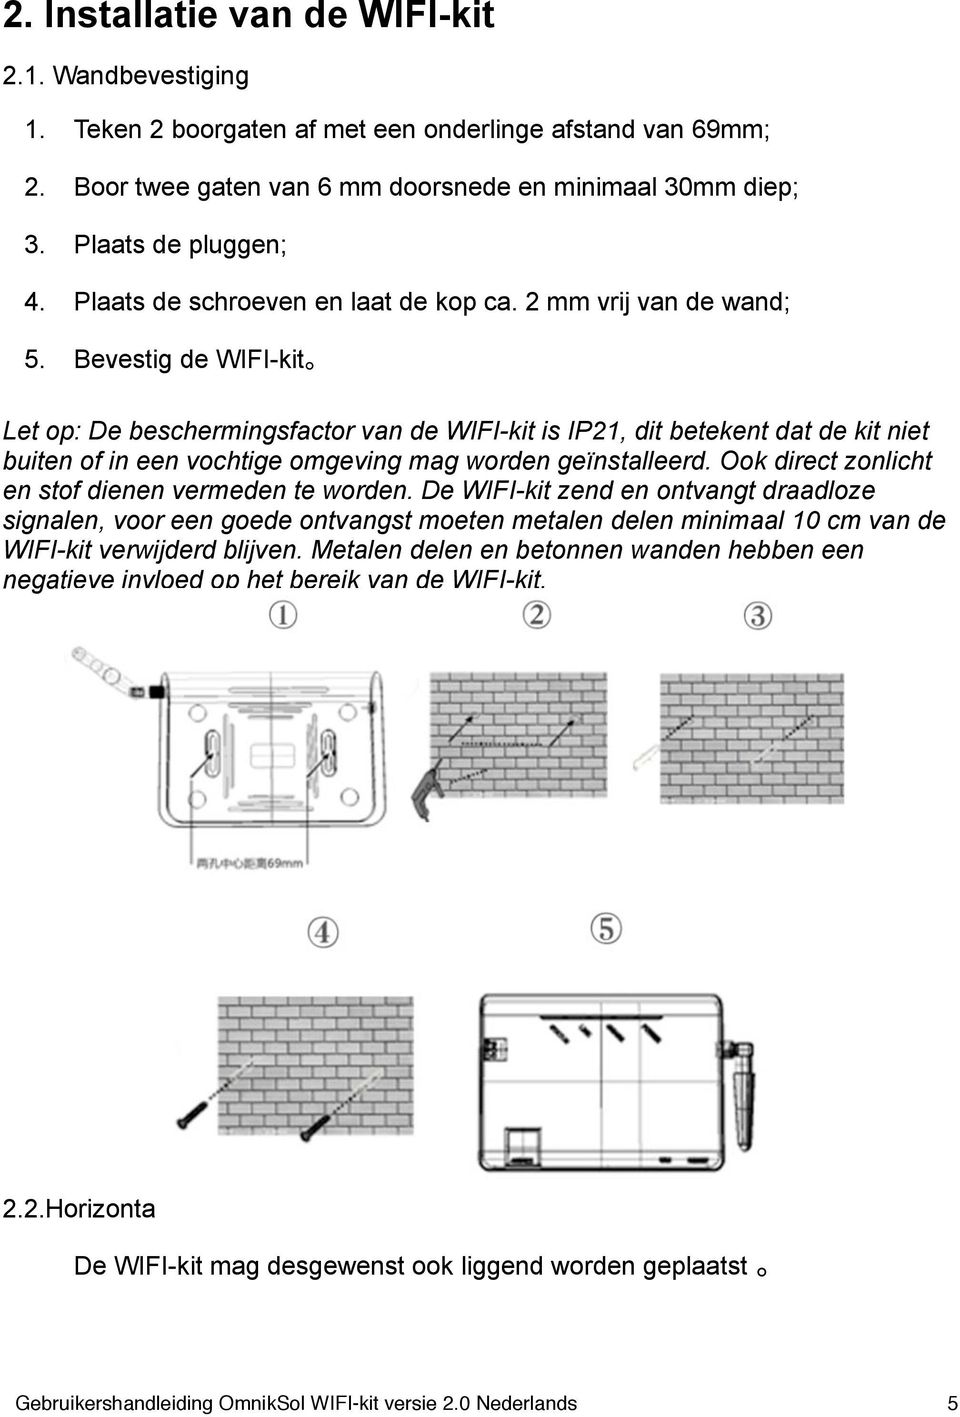 Bevestig de WIFI-kit Let op: De beschermingsfactor van de WIFI-kit is IP21, dit betekent dat de kit niet buiten of in een vochtige omgeving mag worden geïnstalleerd.